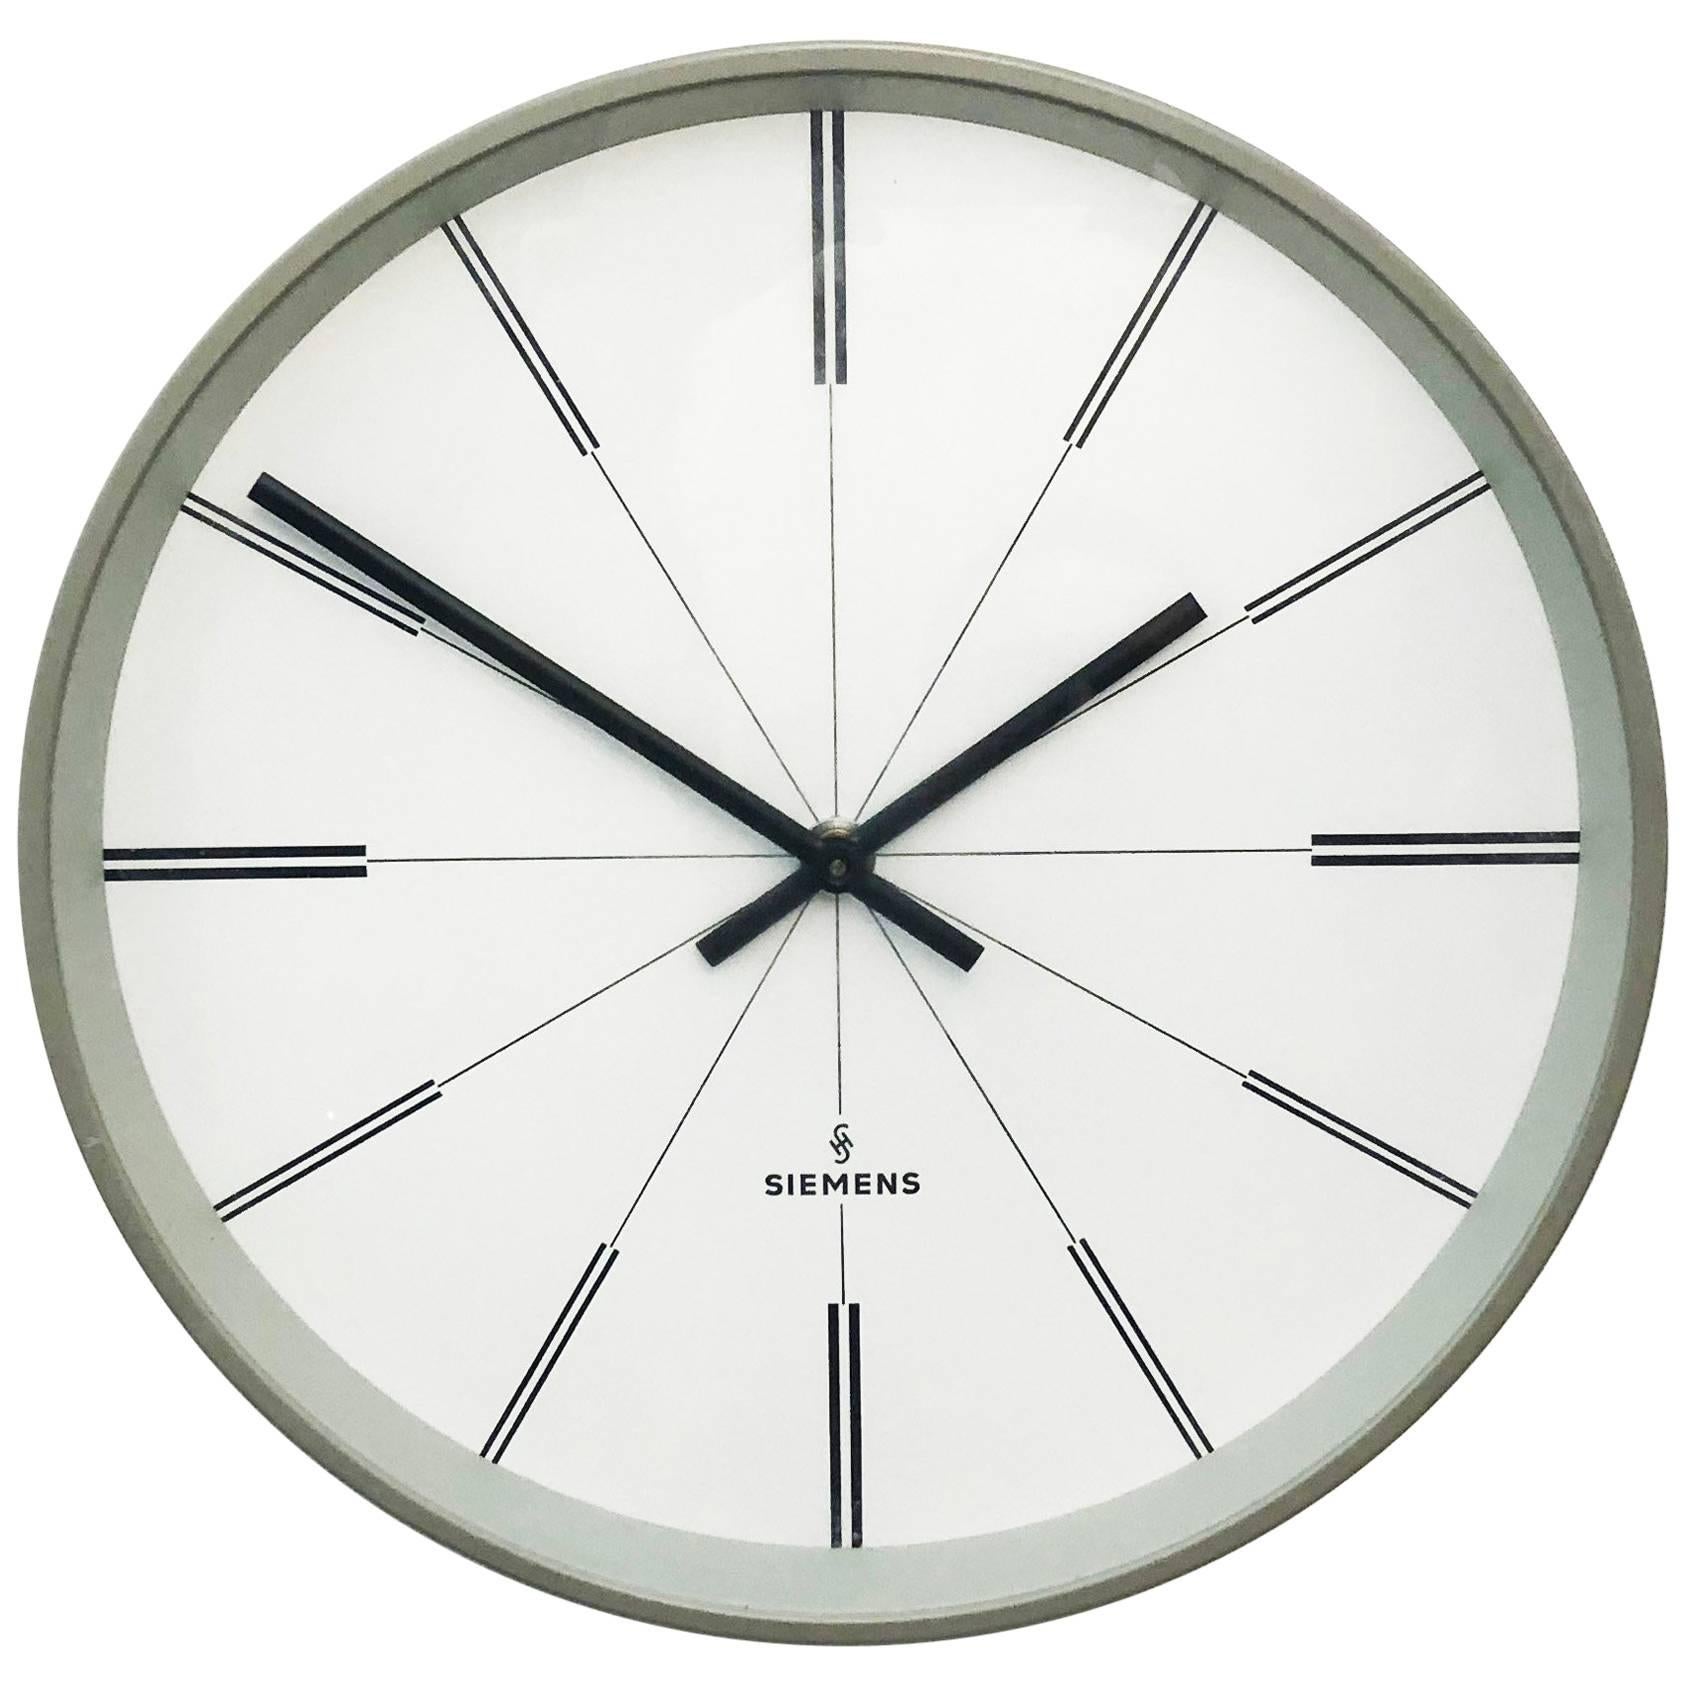 Siemens Industrial Factory or Workshop Wall Clock